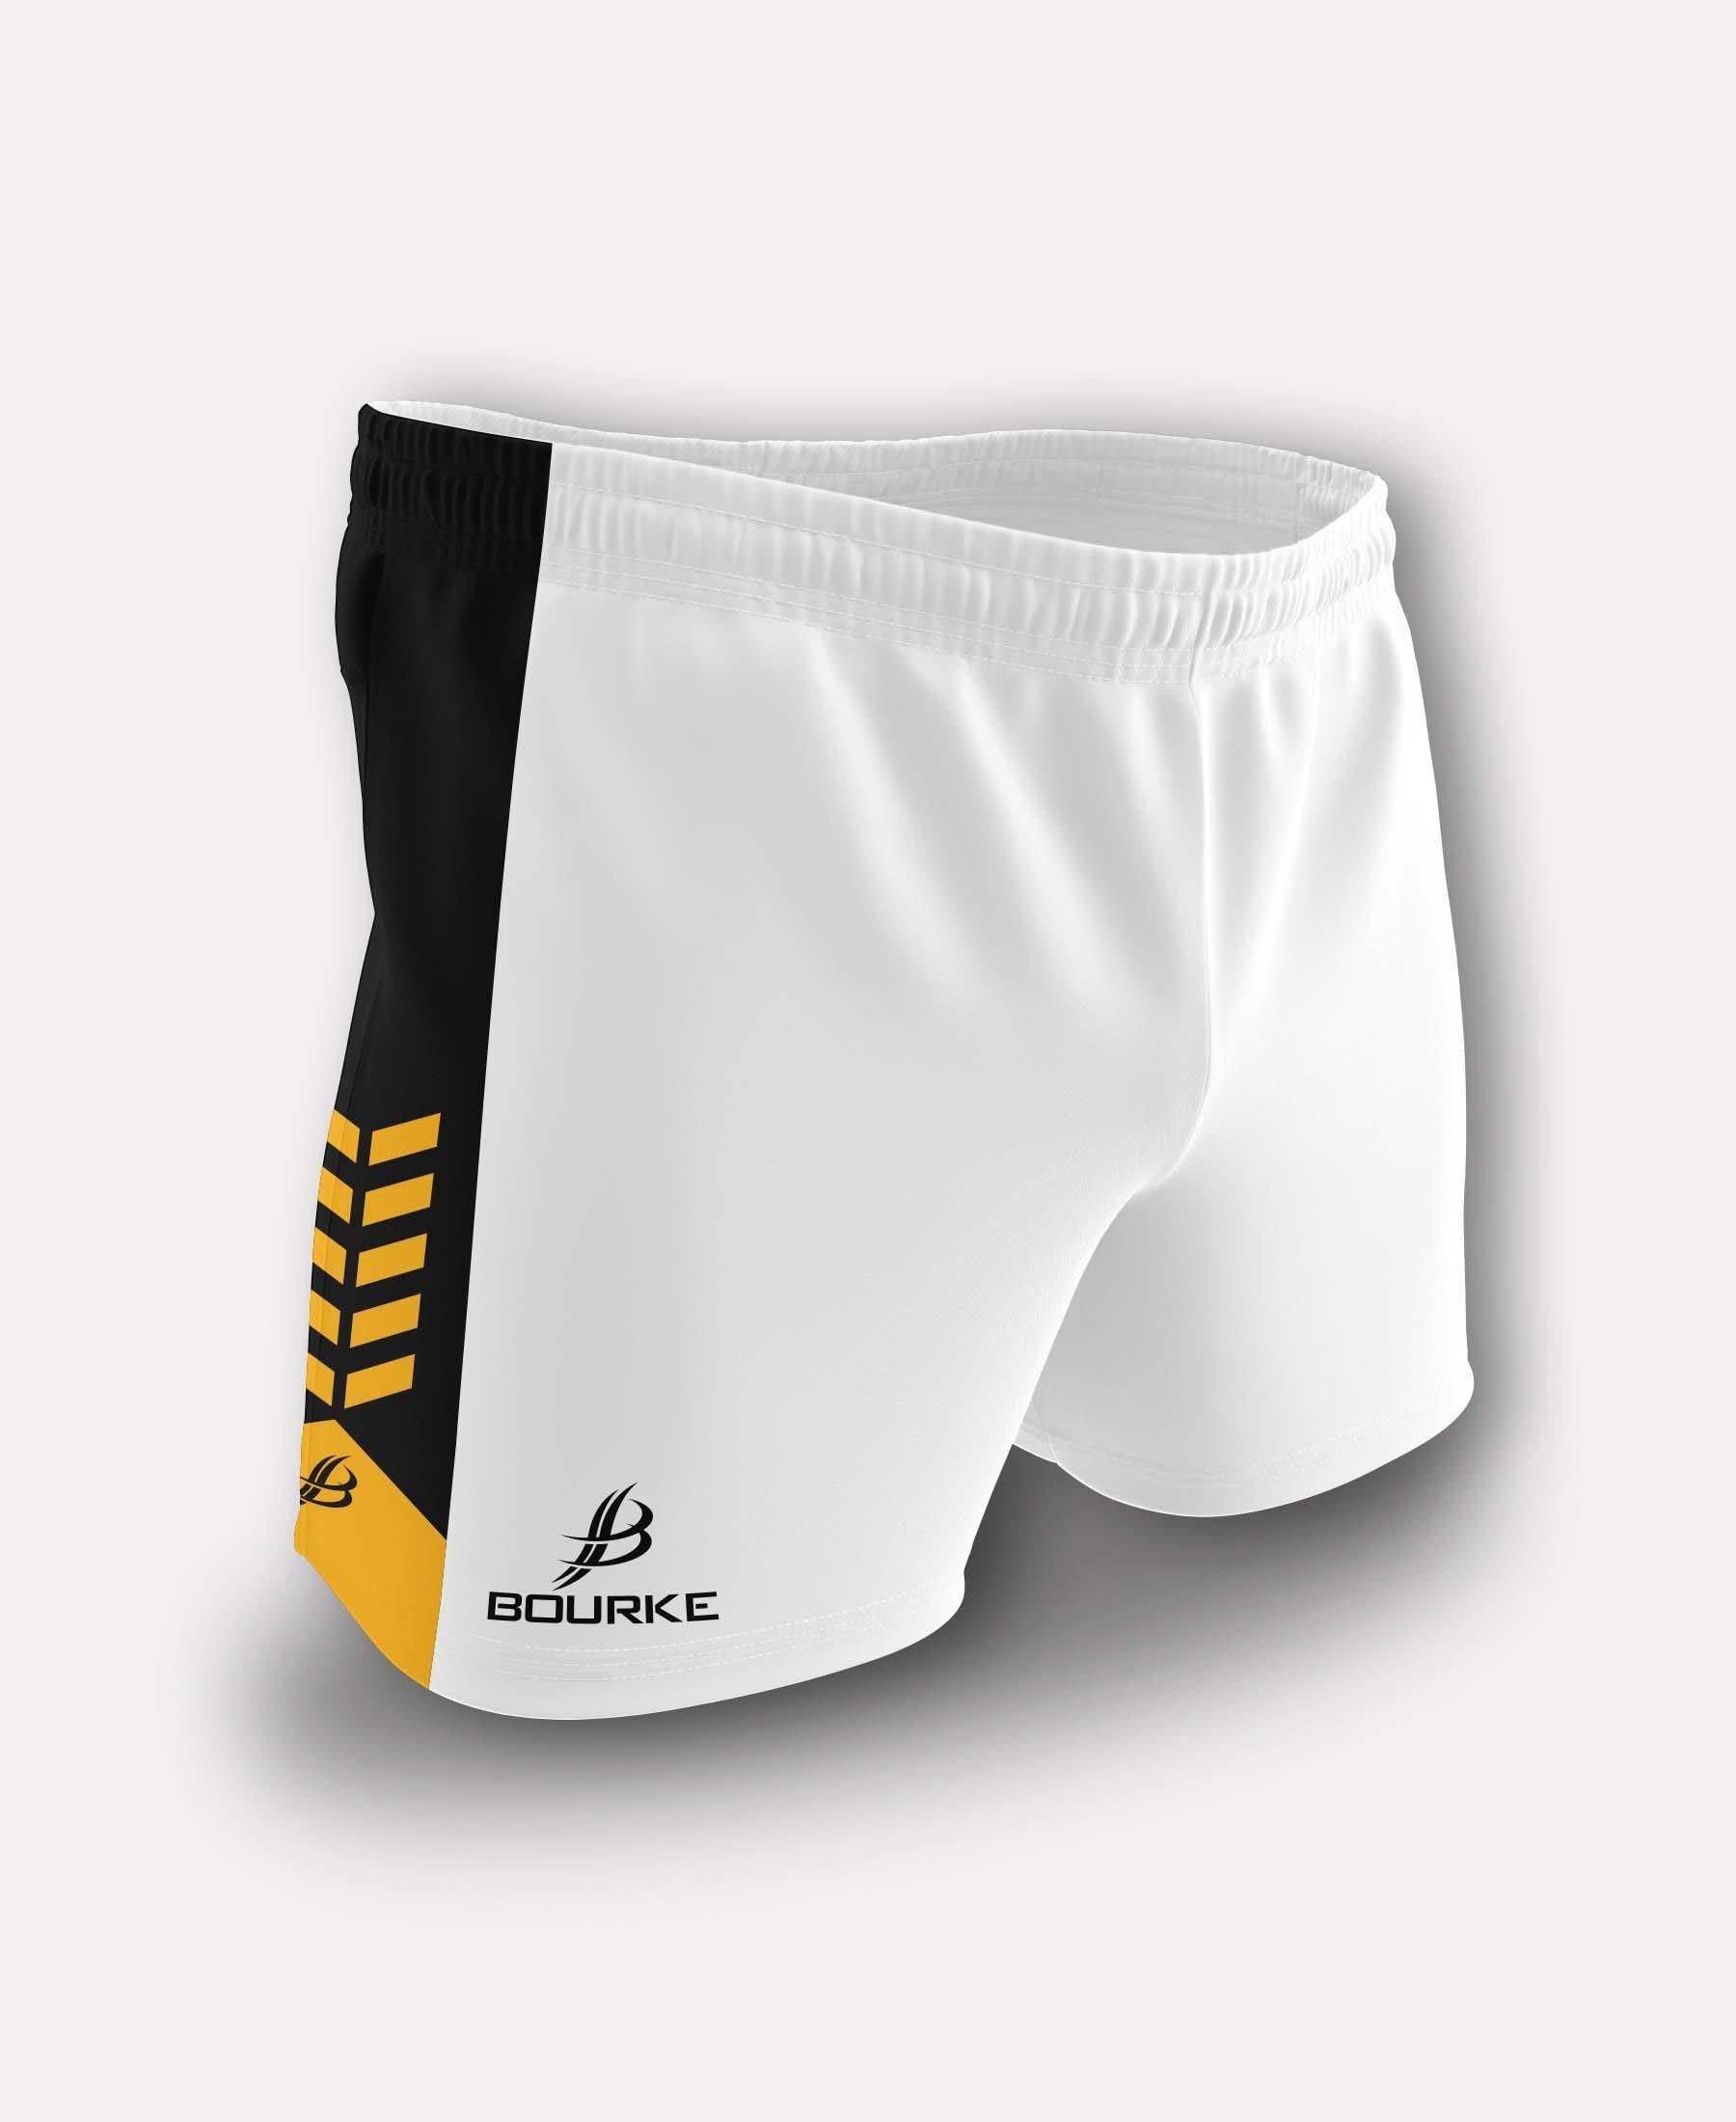 Chevron Adult Shorts (White/Black/Amber) - Bourke Sports